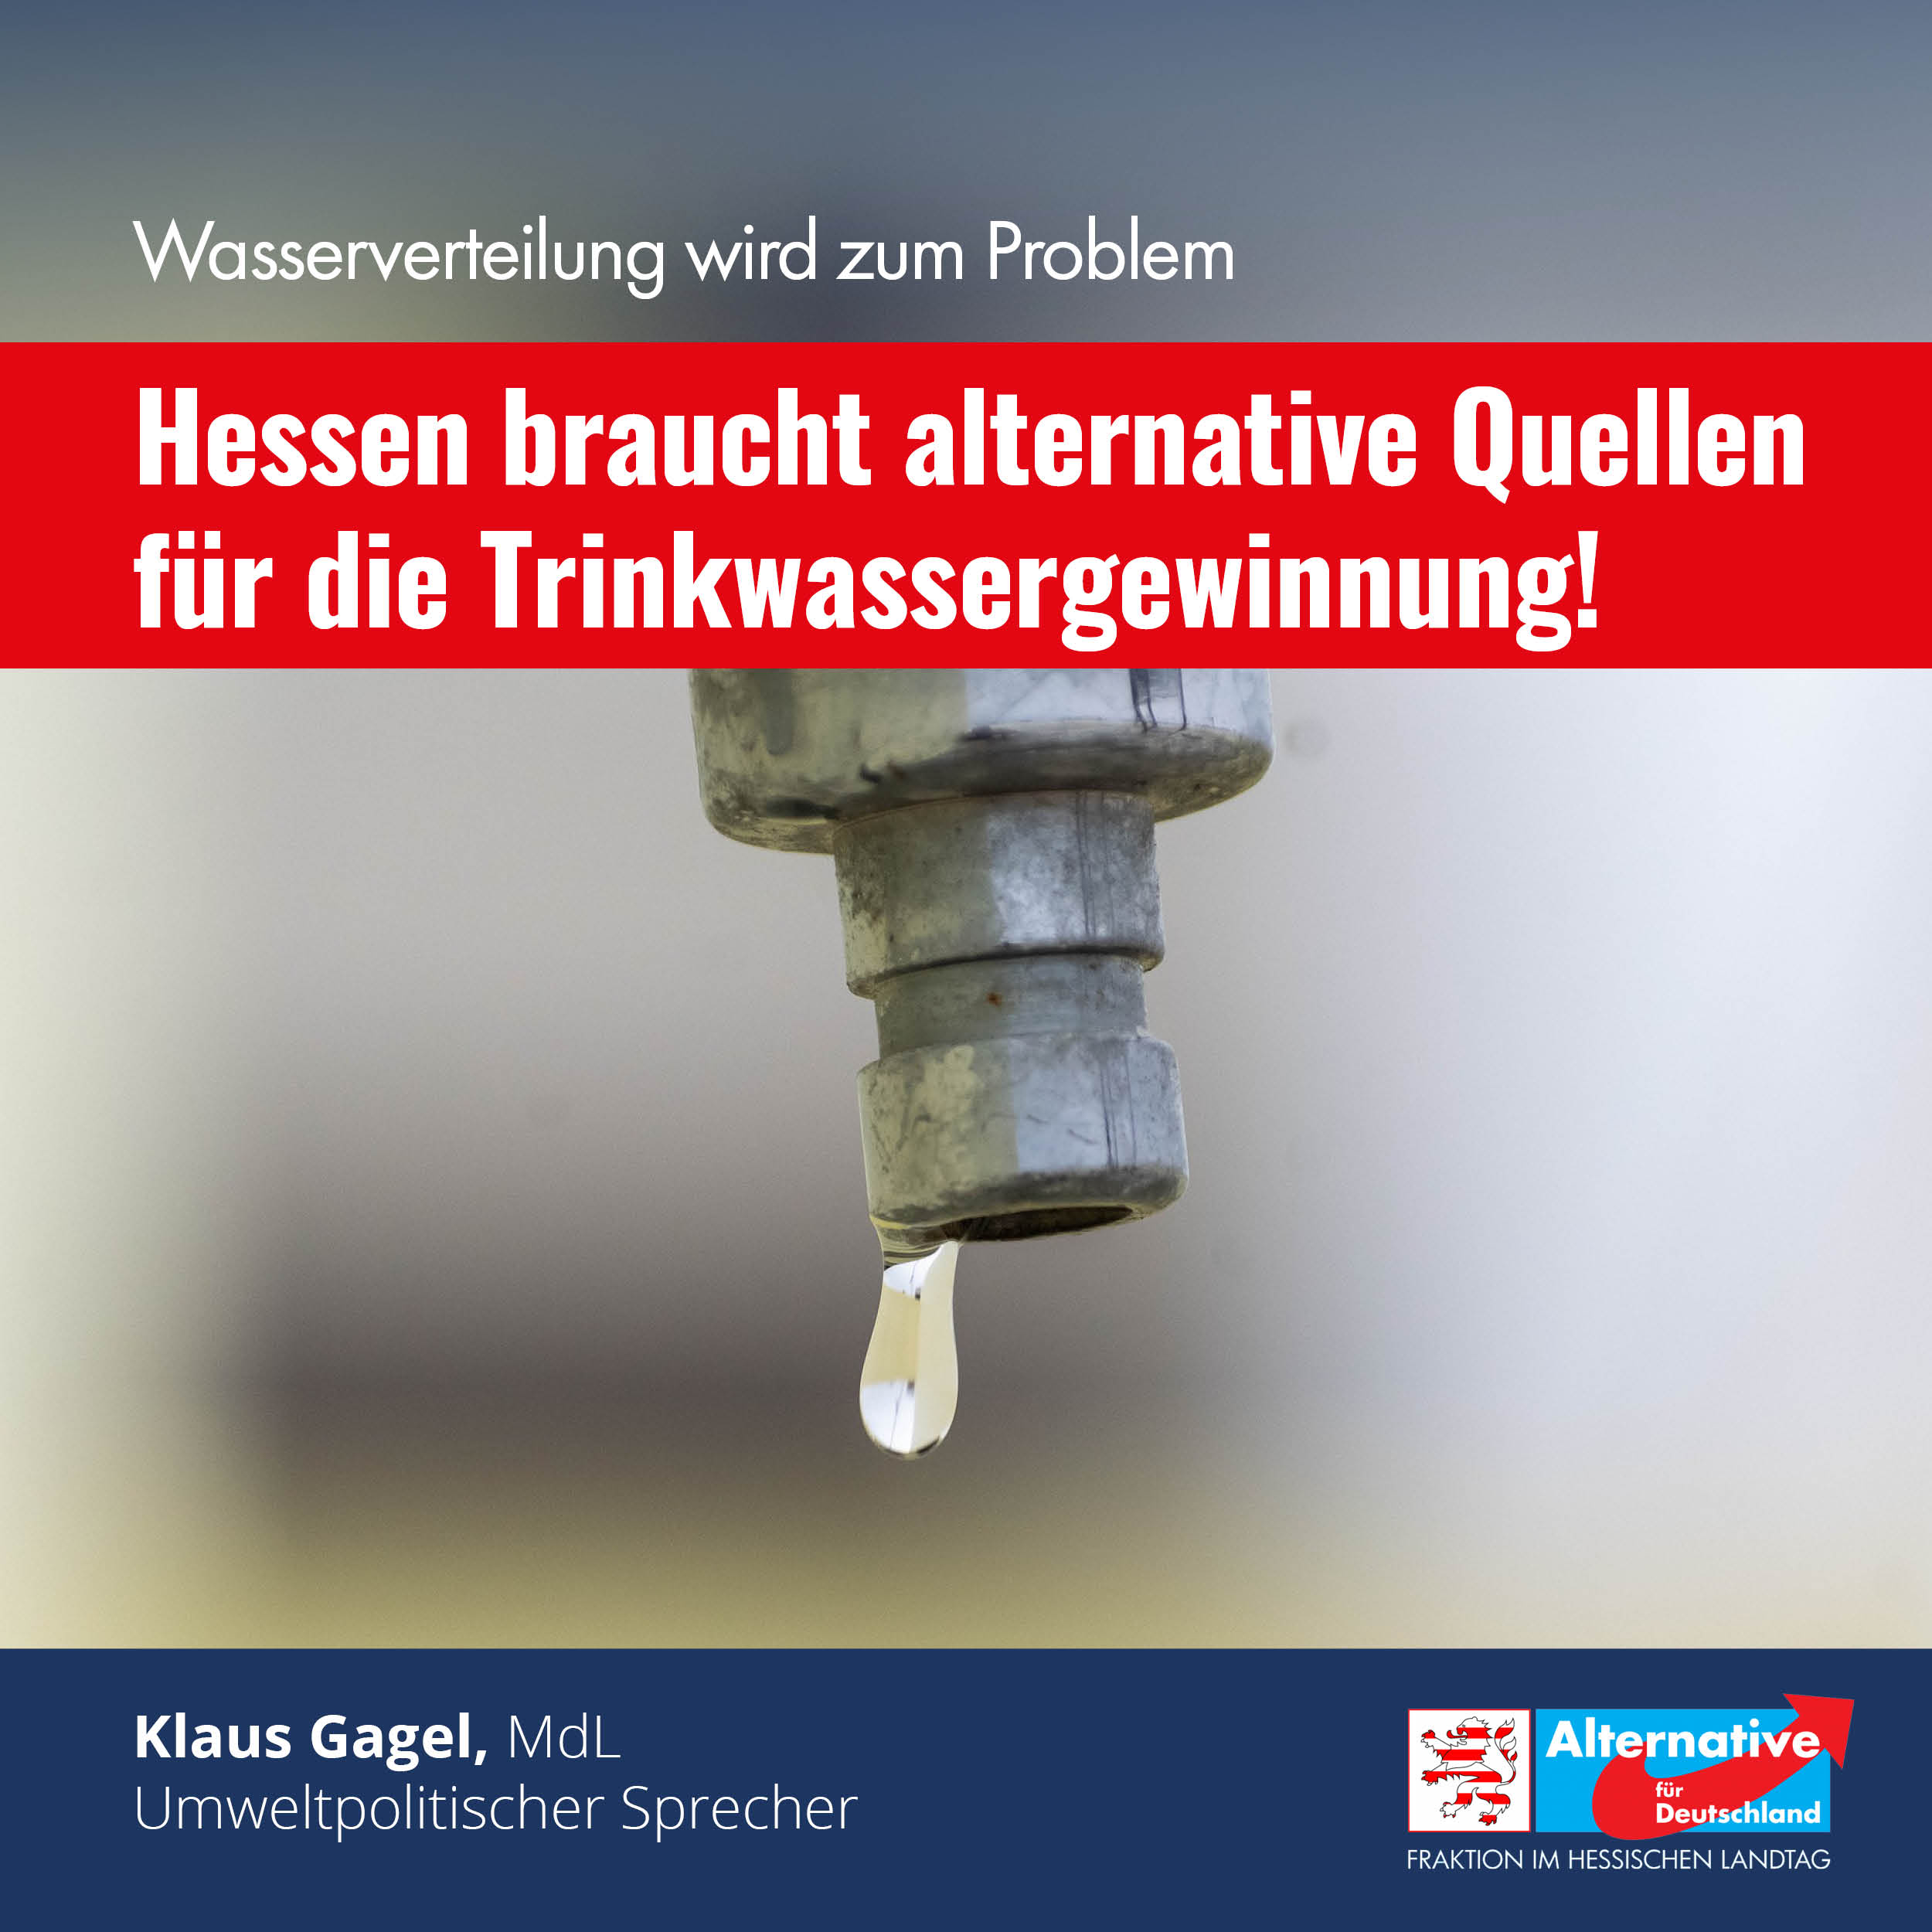 You are currently viewing Hessen braucht alternative Quellen für die Trinkwassergewinnung